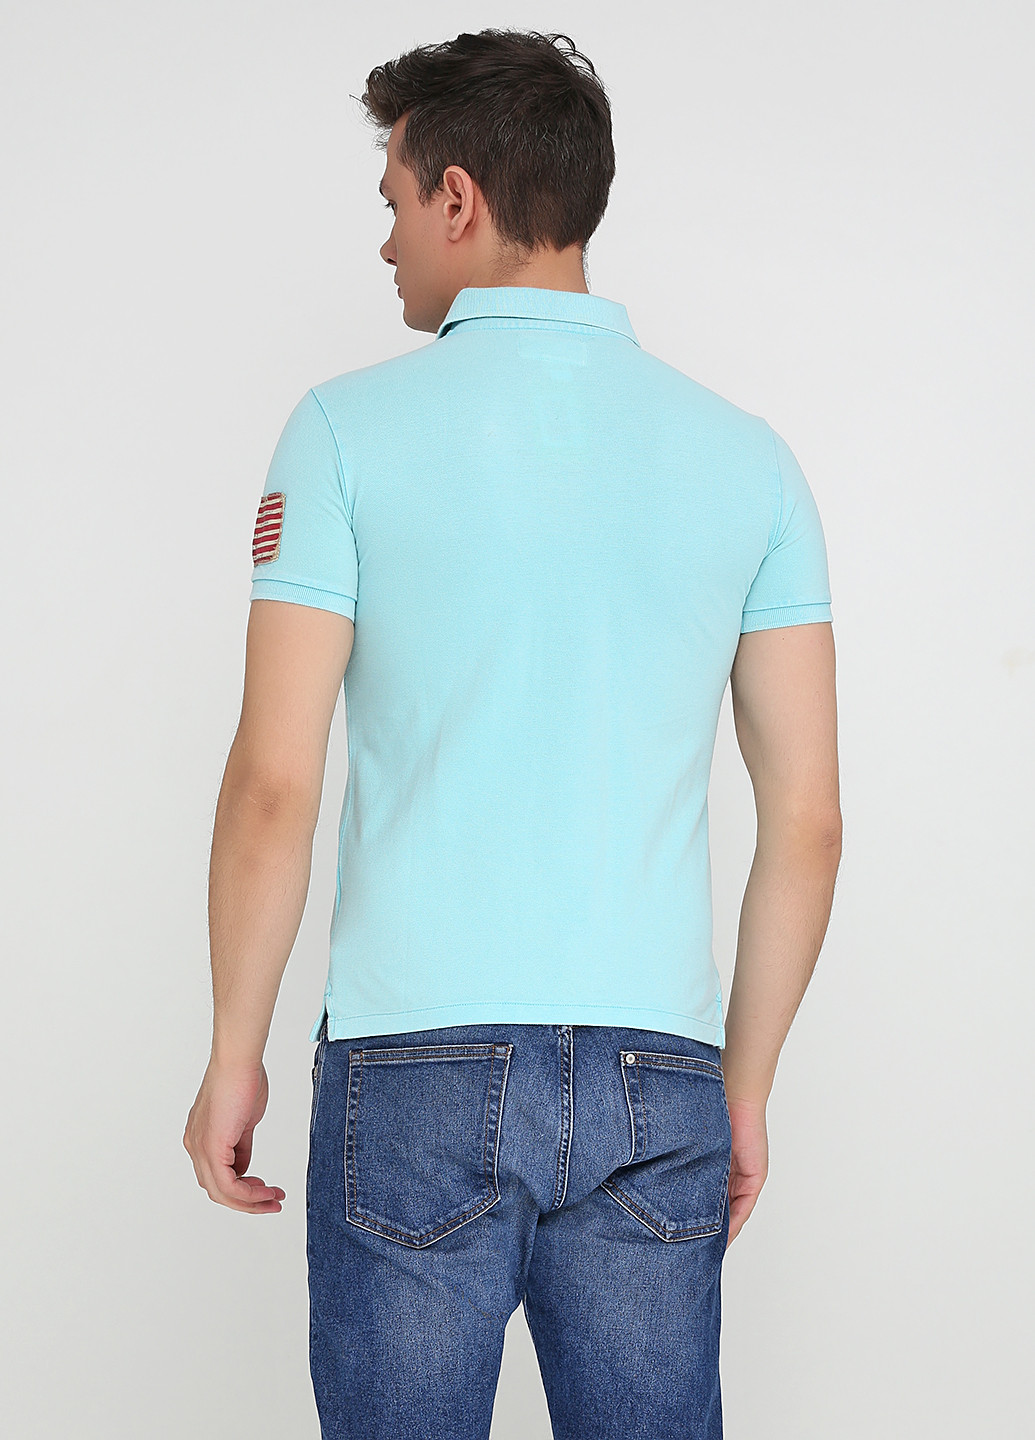 Голубой футболка-поло для мужчин Ralph Lauren однотонная